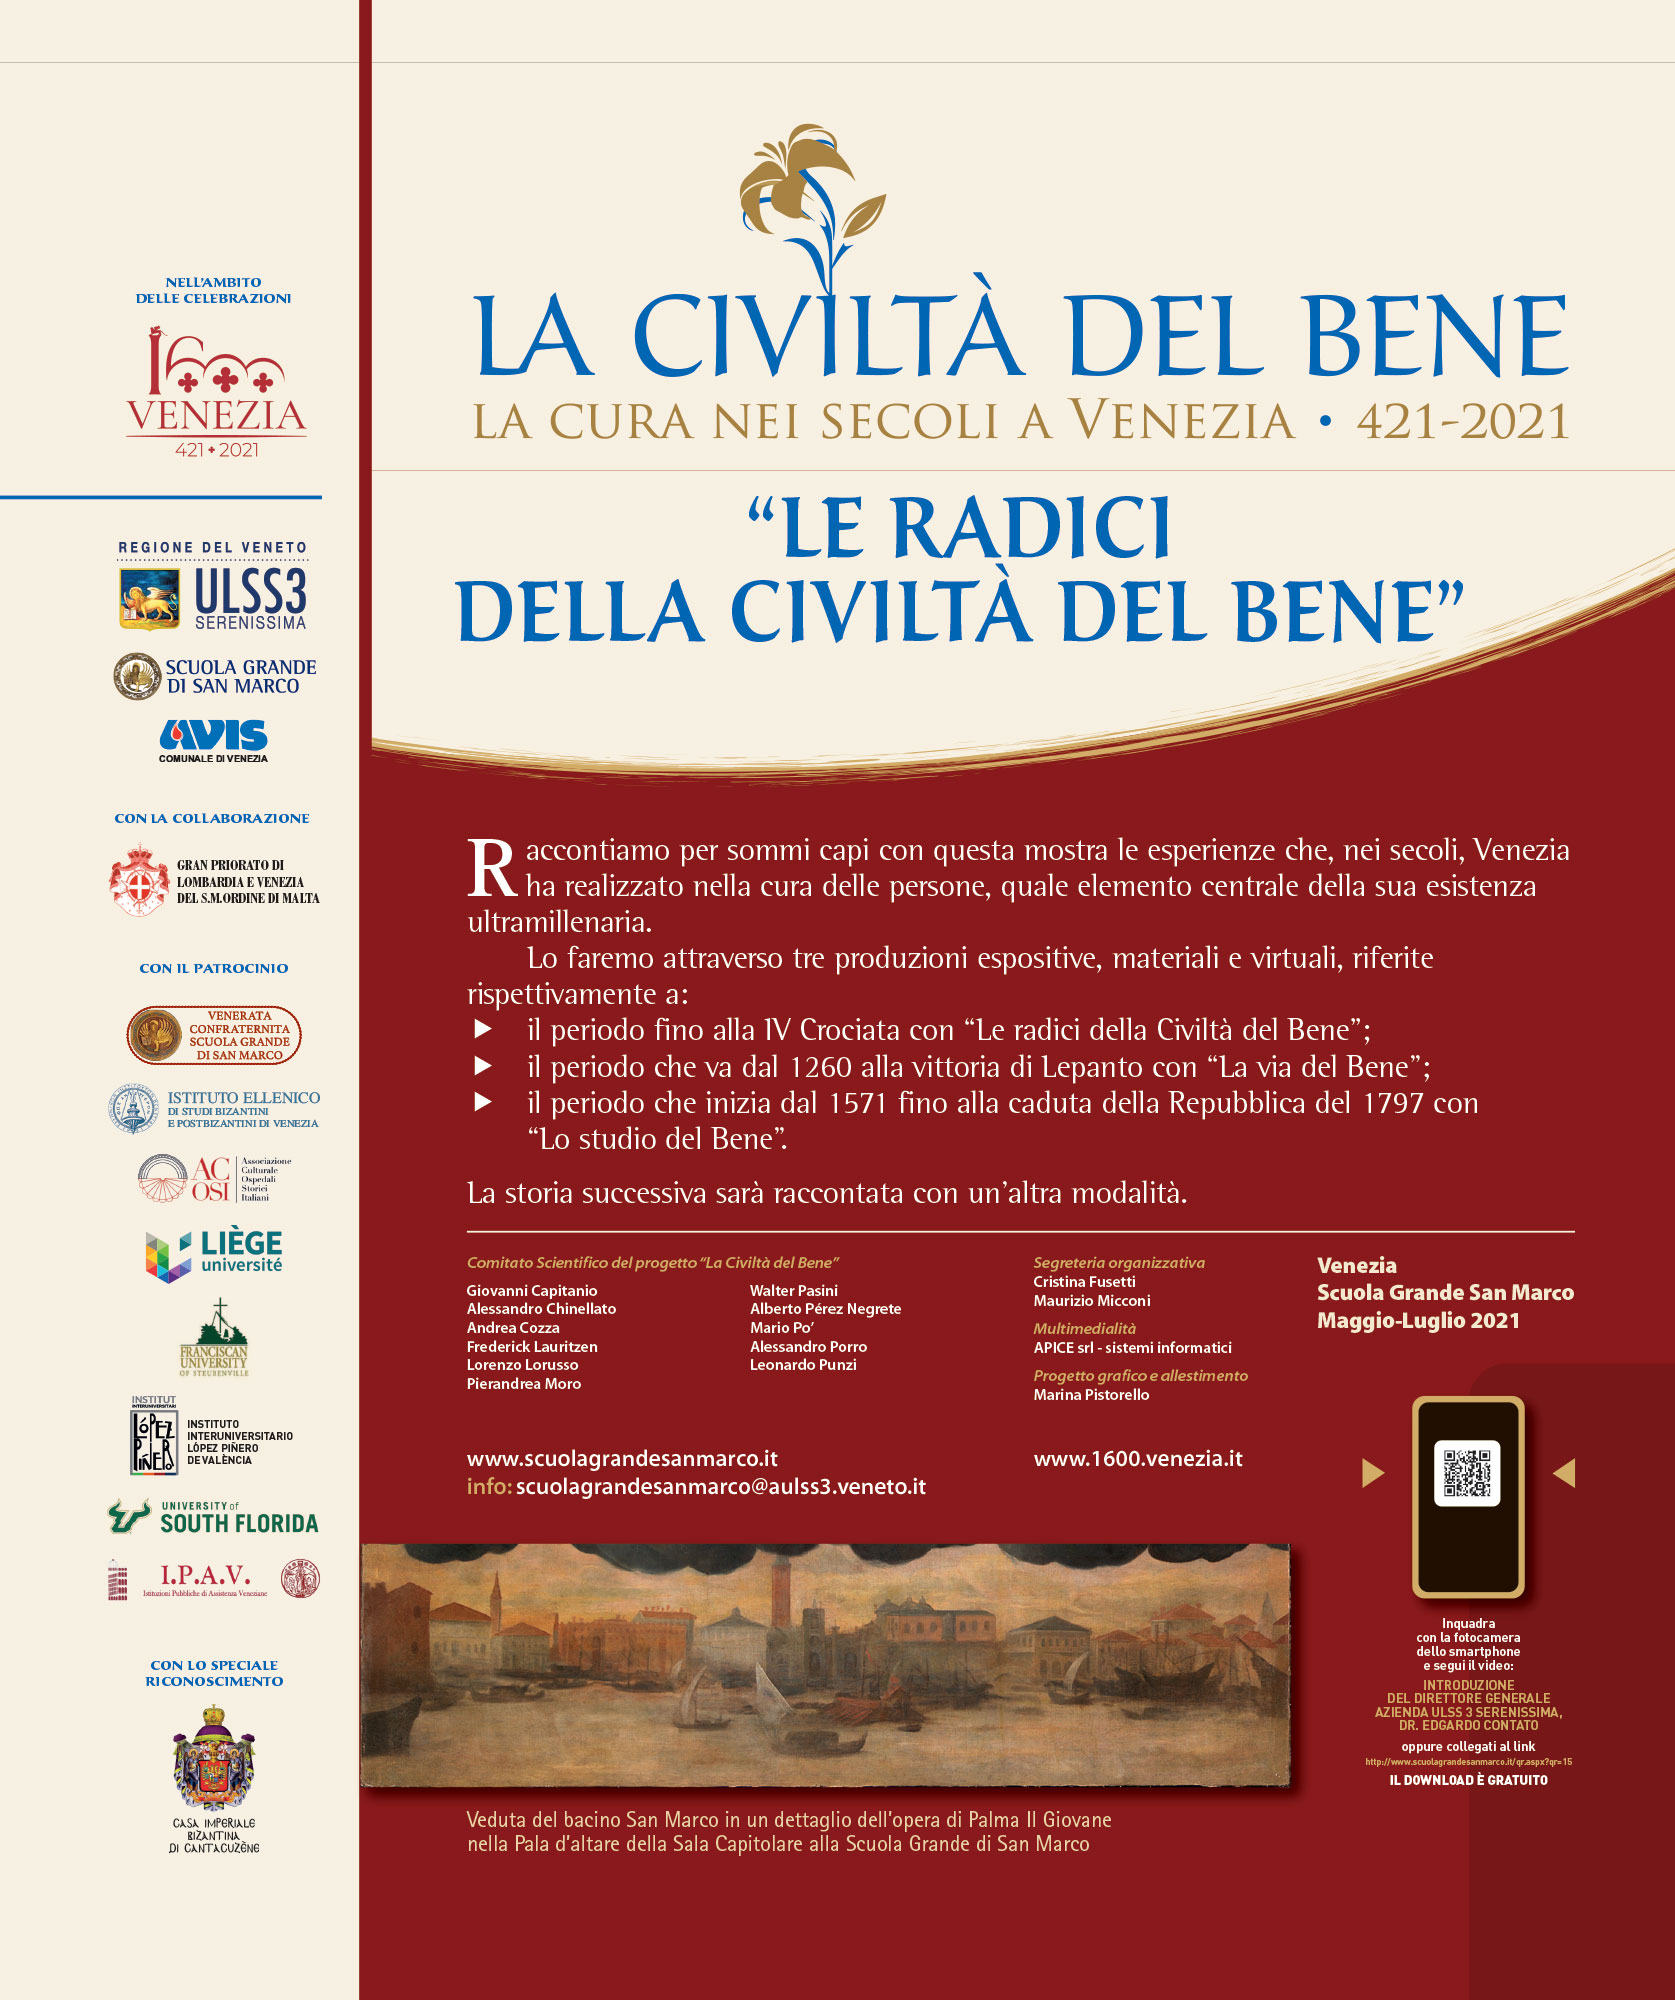 La Civiltà del Bene: La Cura nei Secoli a Venezia